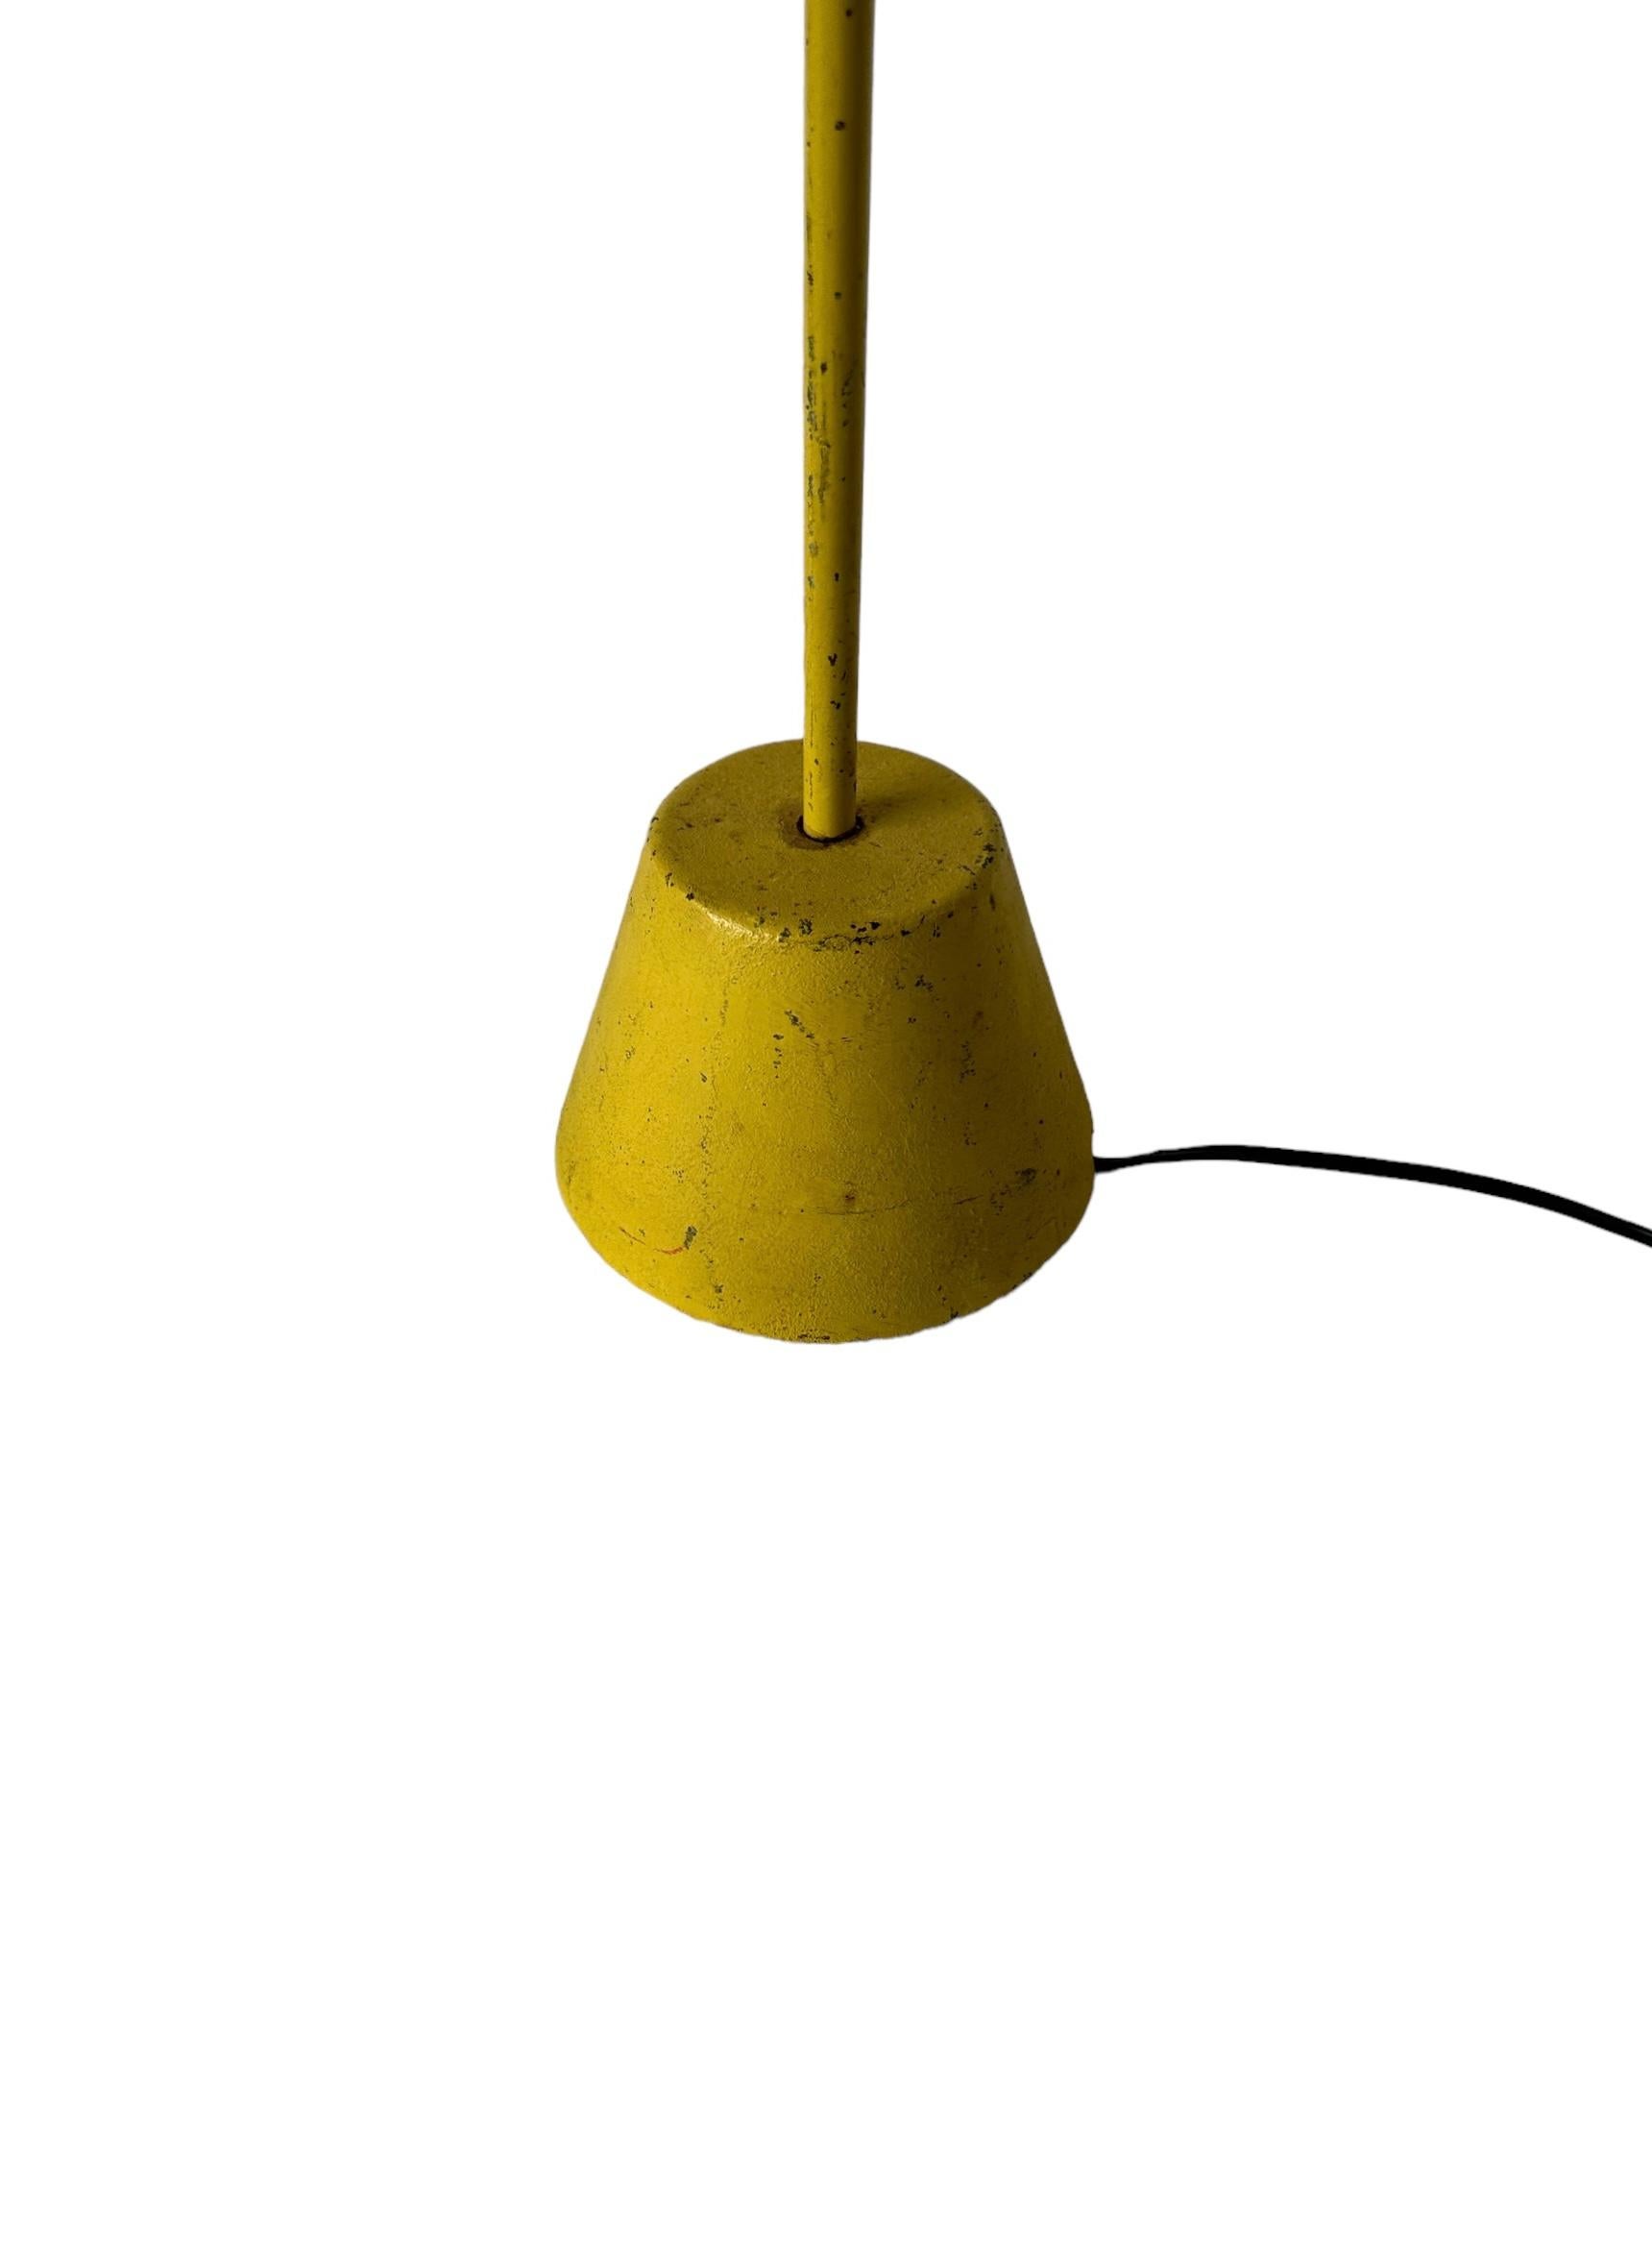 Elegant lampadaire minimaliste jaune. Mât métallique fin ancré par une base conique lourde et chic. Abat-jour disponible pour 99 $ supplémentaires. Nous disposons également d'une deuxième version en noir.